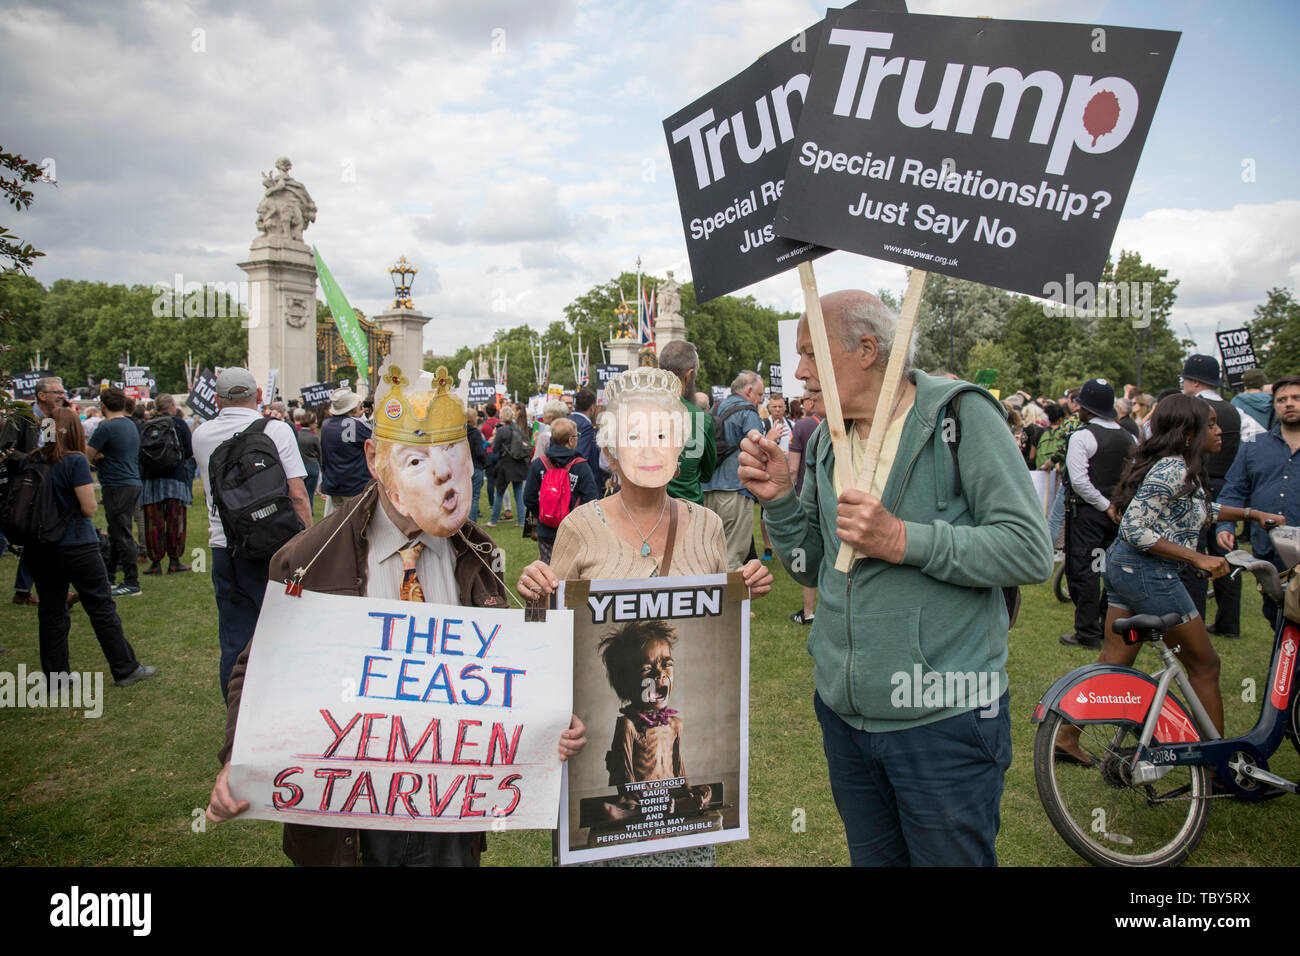 Londra, Regno Unito. 03 Giugno, 2019. I dimostranti tenere cartelloni durante una manifestazione di protesta contro la Donald Trump in visita al Regno Unito. Credito: SOPA Immagini limitata/Alamy Live News Foto Stock